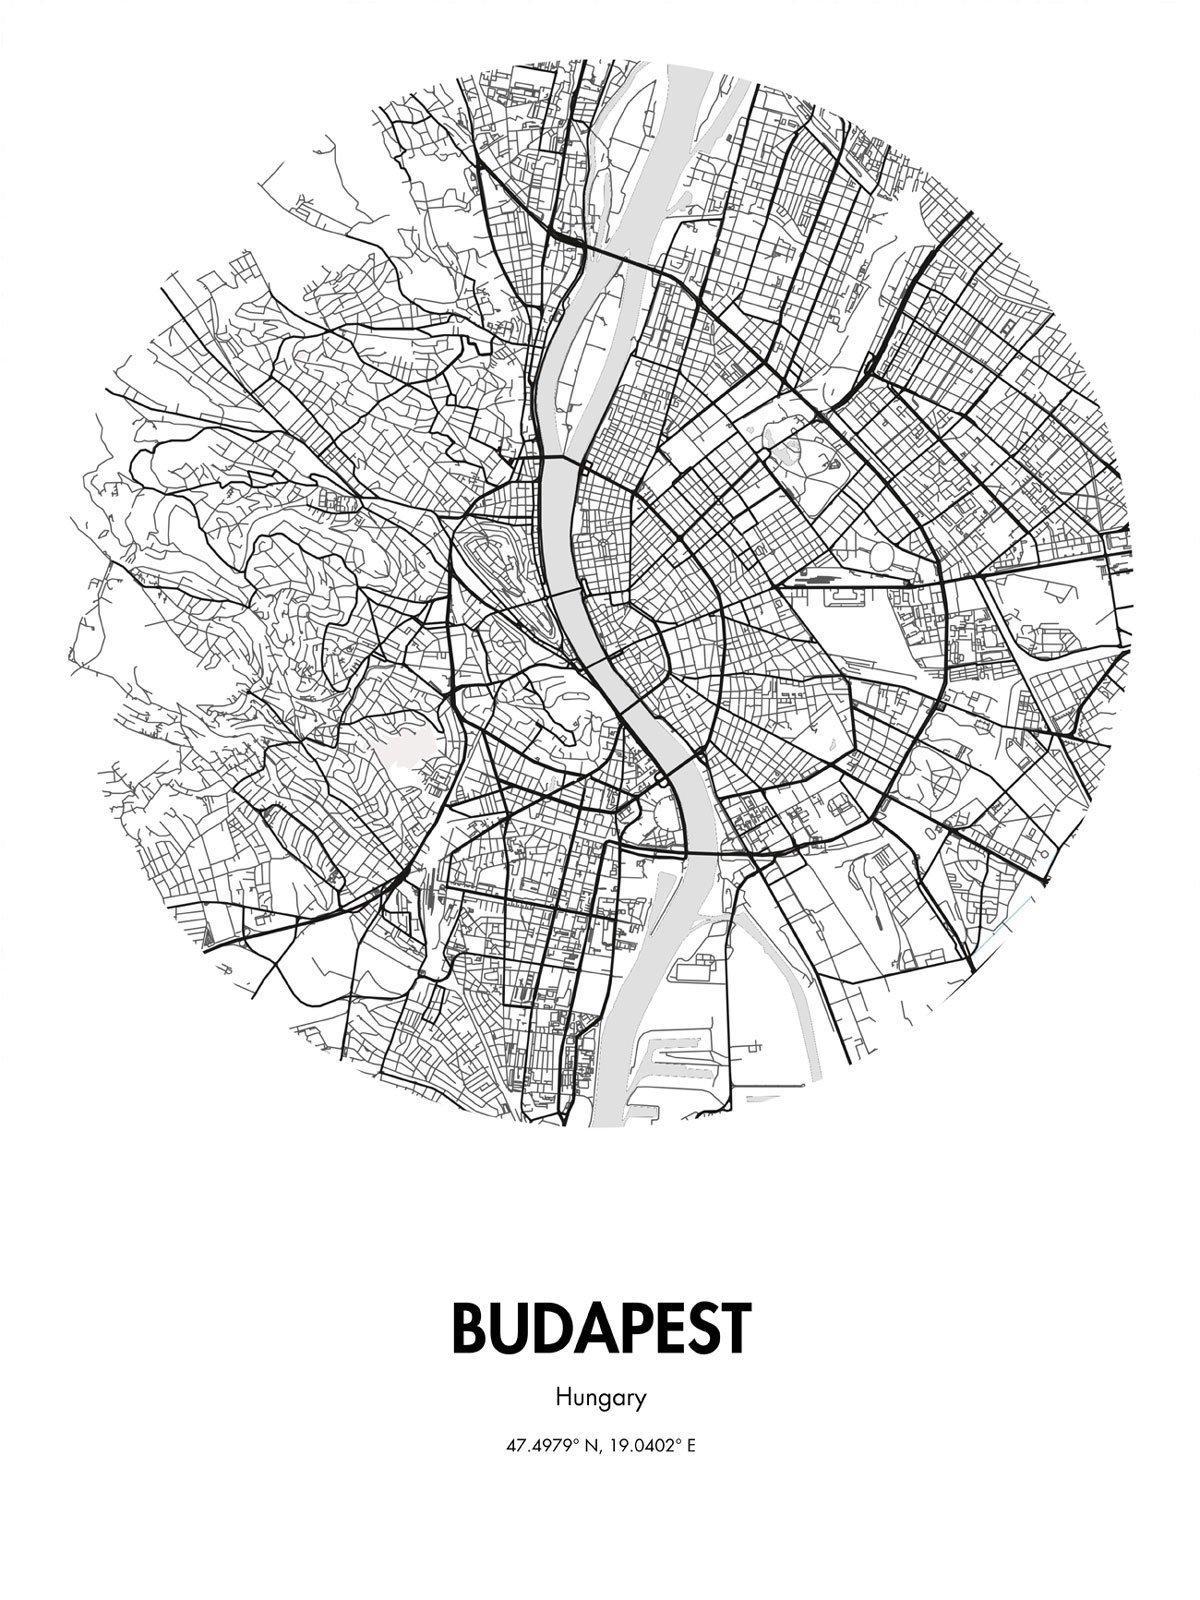 מפה של בודפשט אמנות רחוב